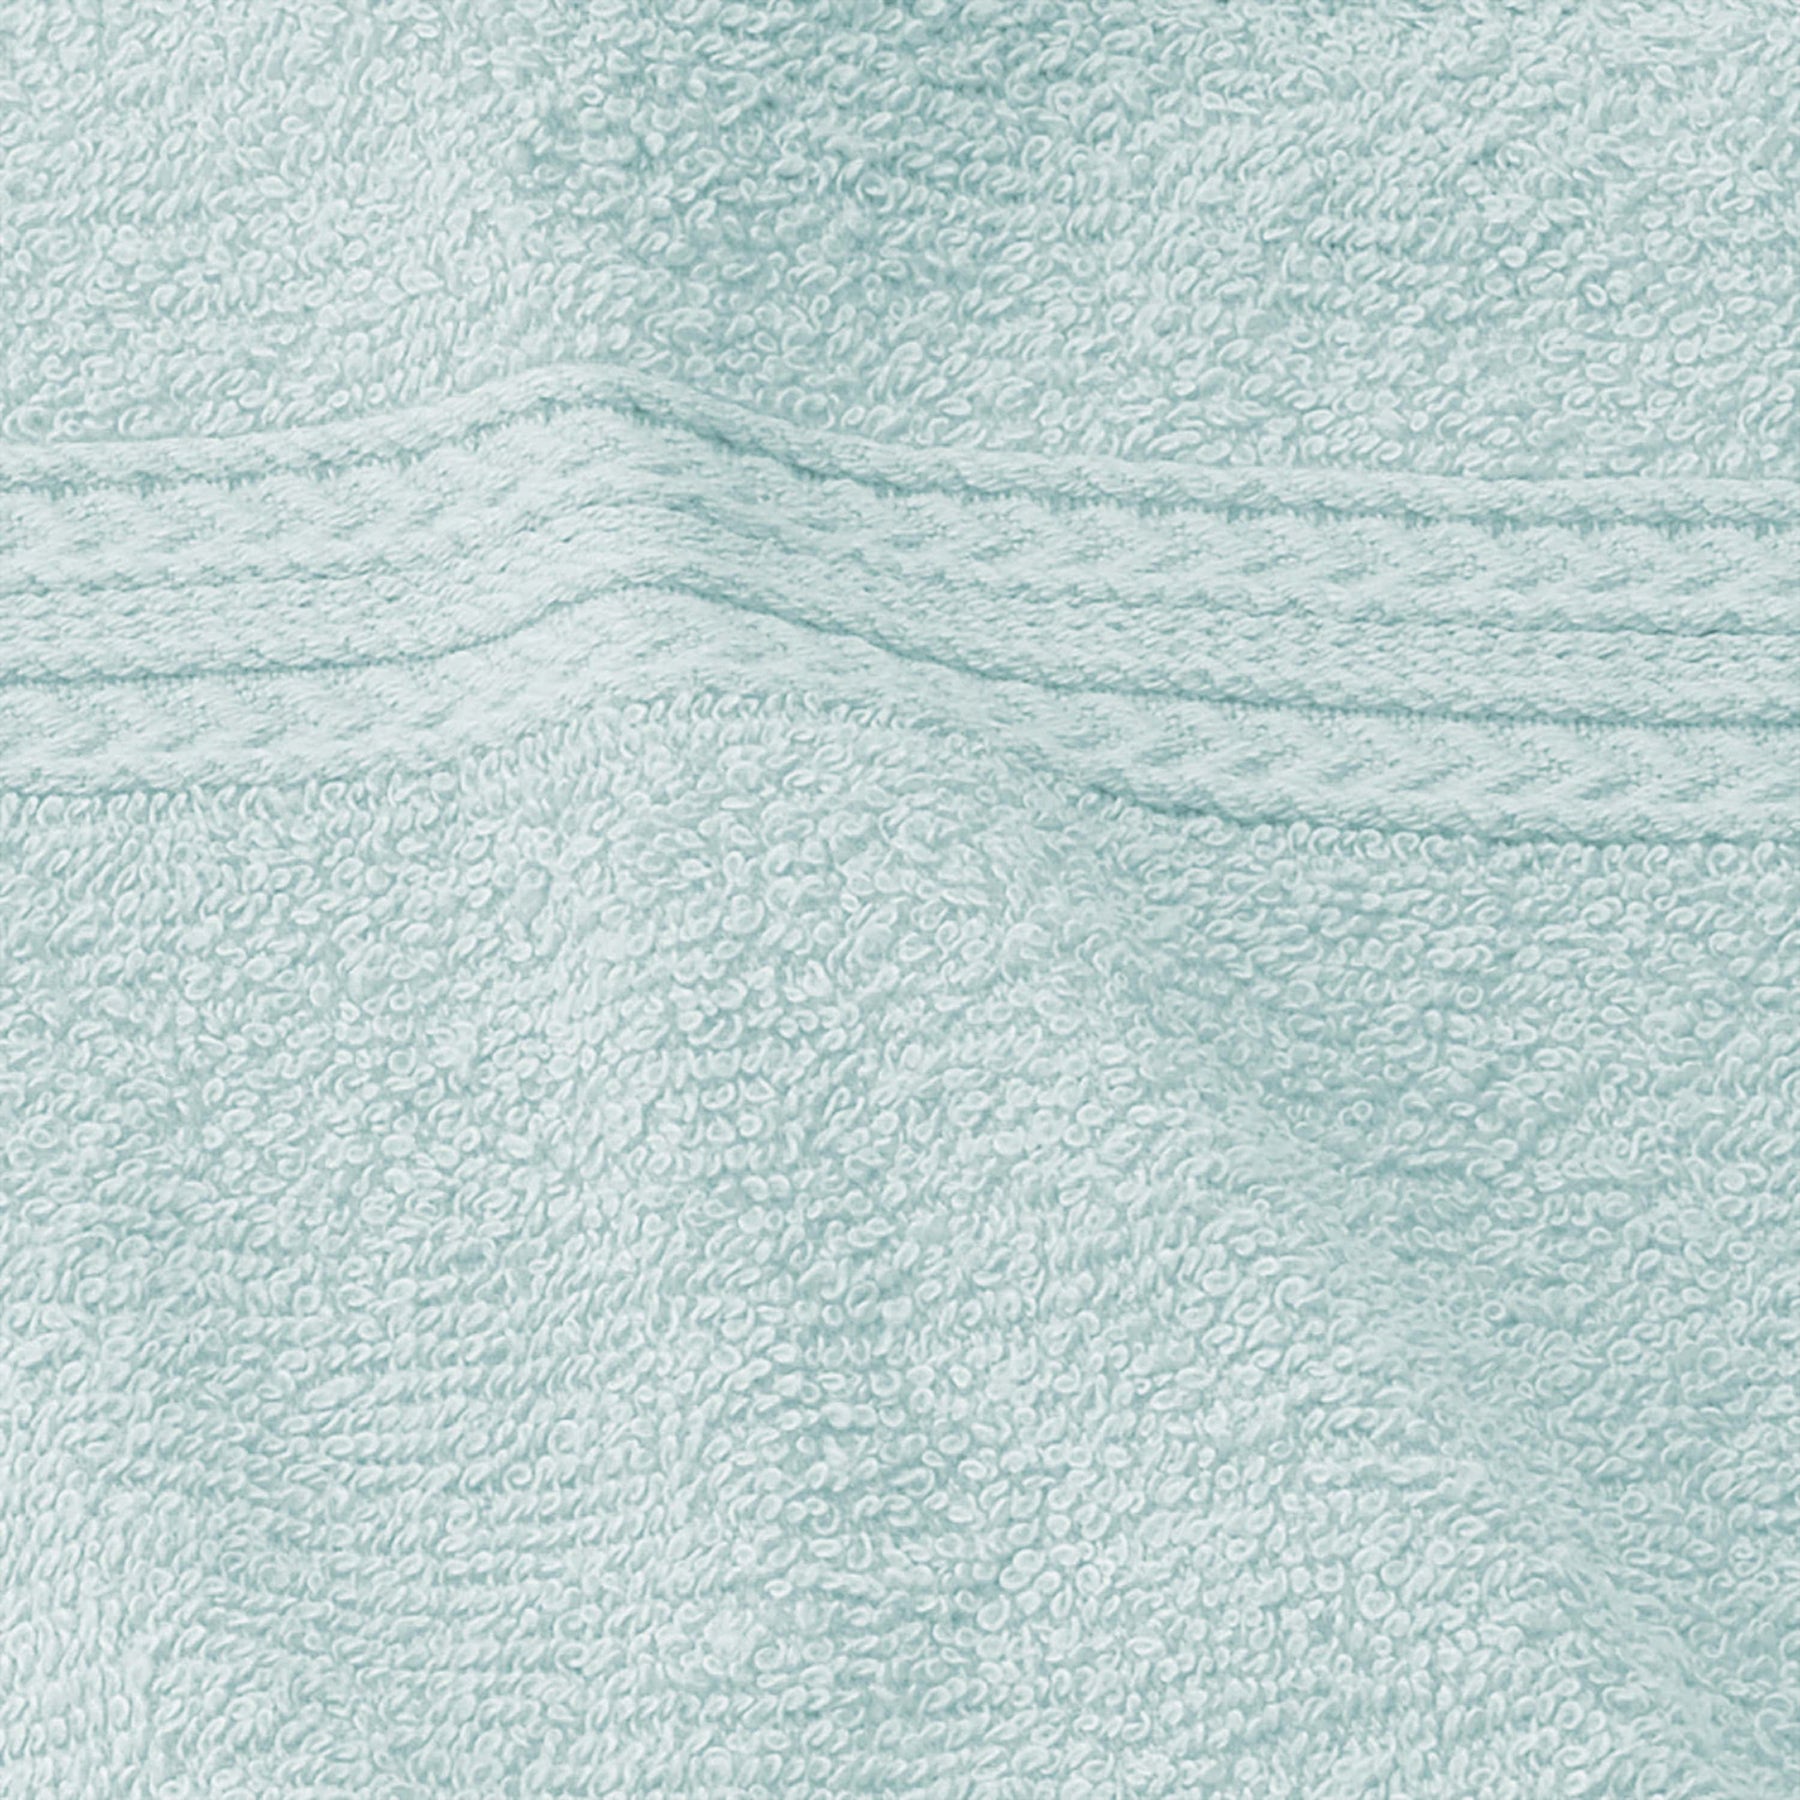 Superior Eco-Friendly Ring Spun Cotton 6-Piece Hand Towel Set - Aqua Marine